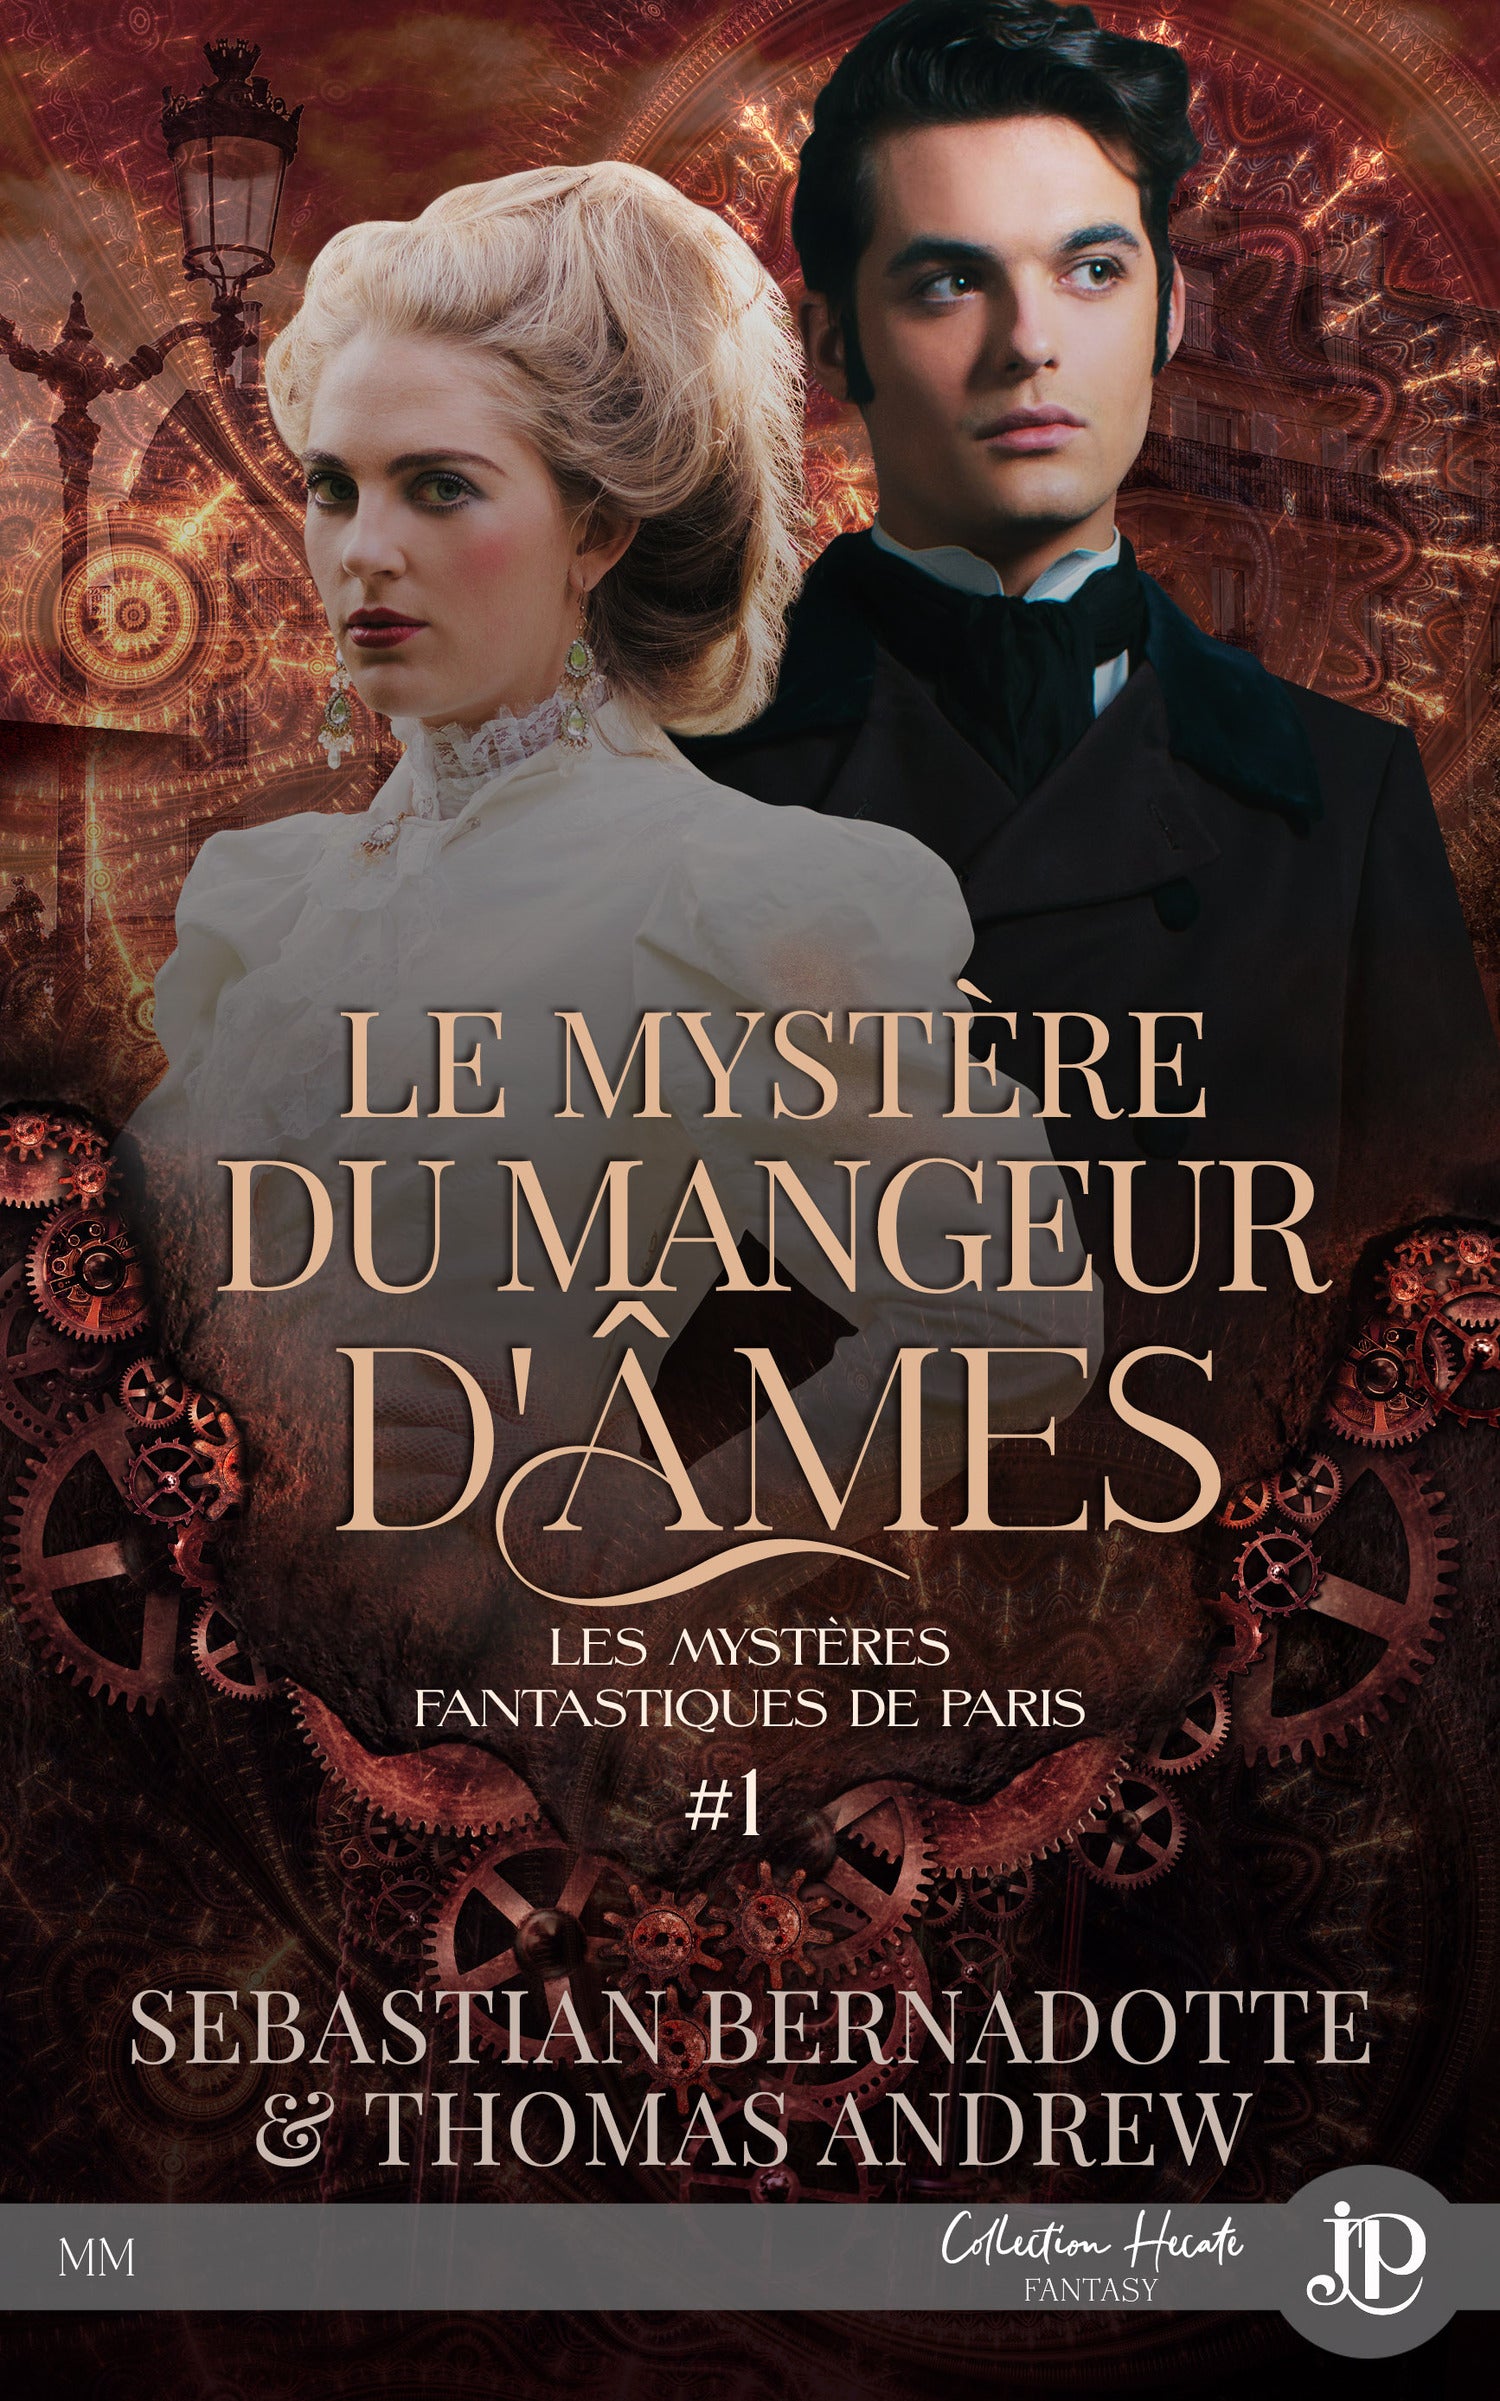 Les mystères fantastiques de Paris #1 : Le mystère du mangeur d'âmes – Juno  Publishing